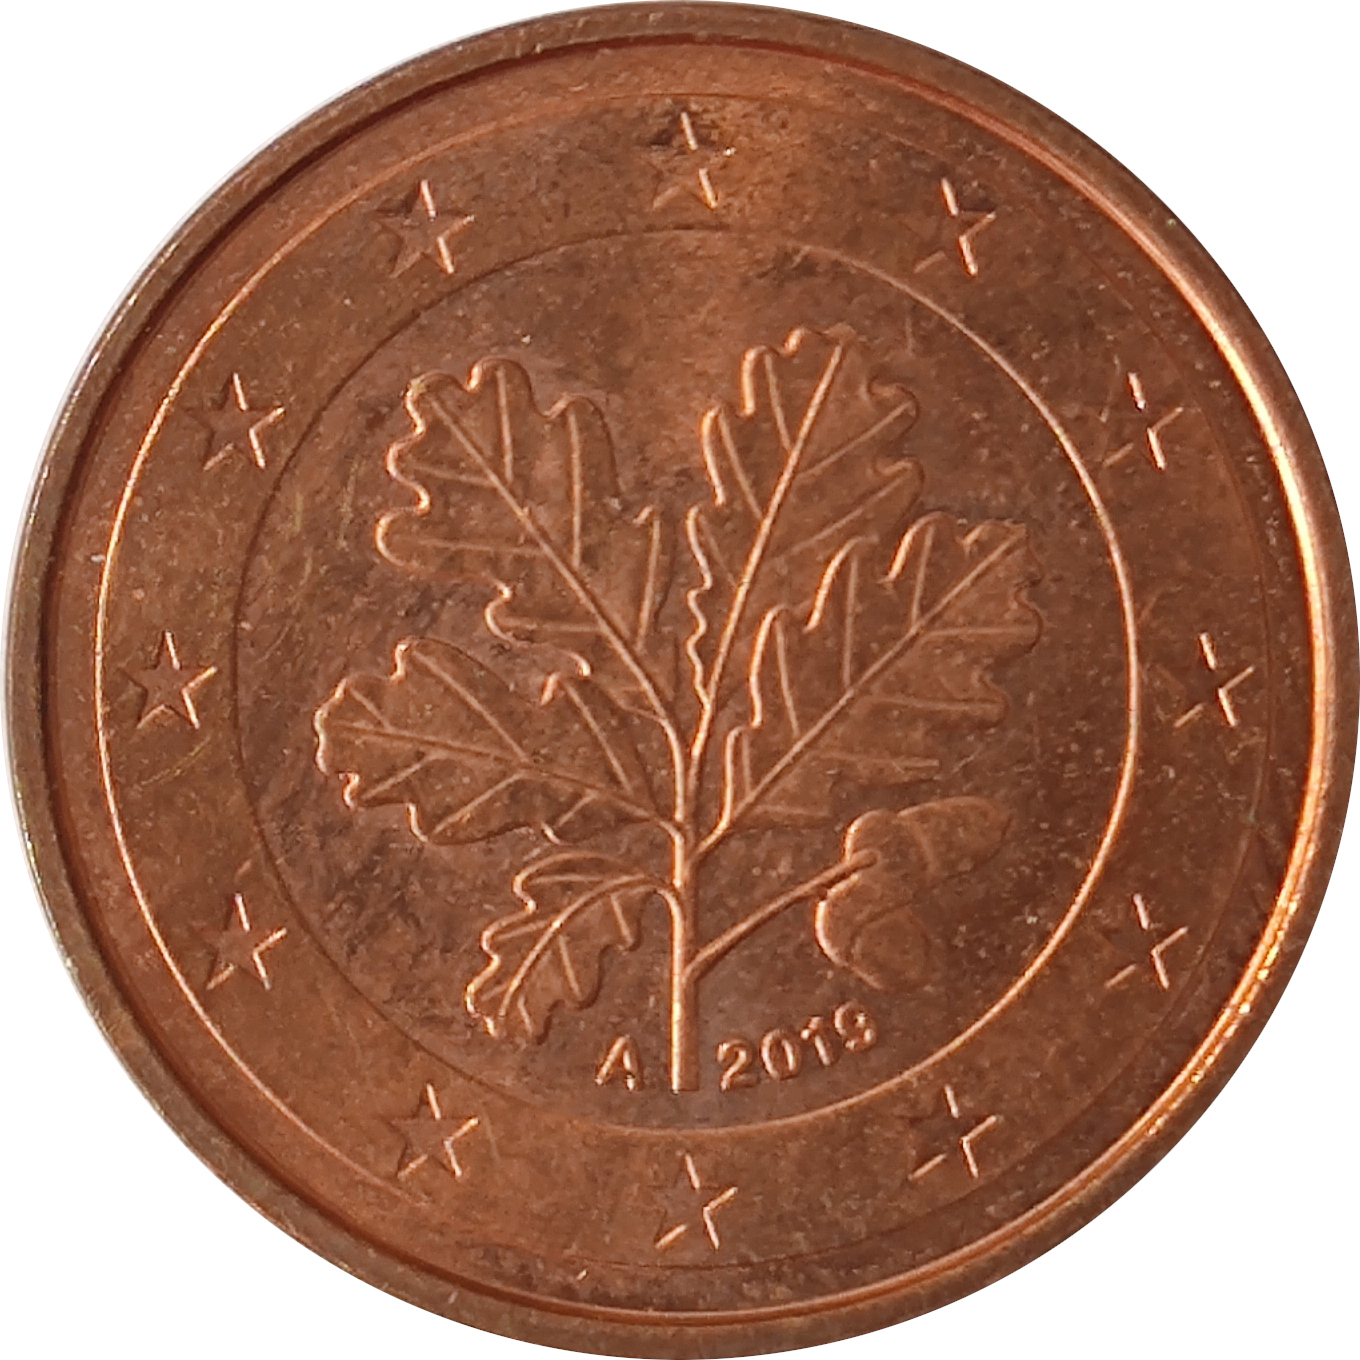 5 eurocents - Branche de chêne